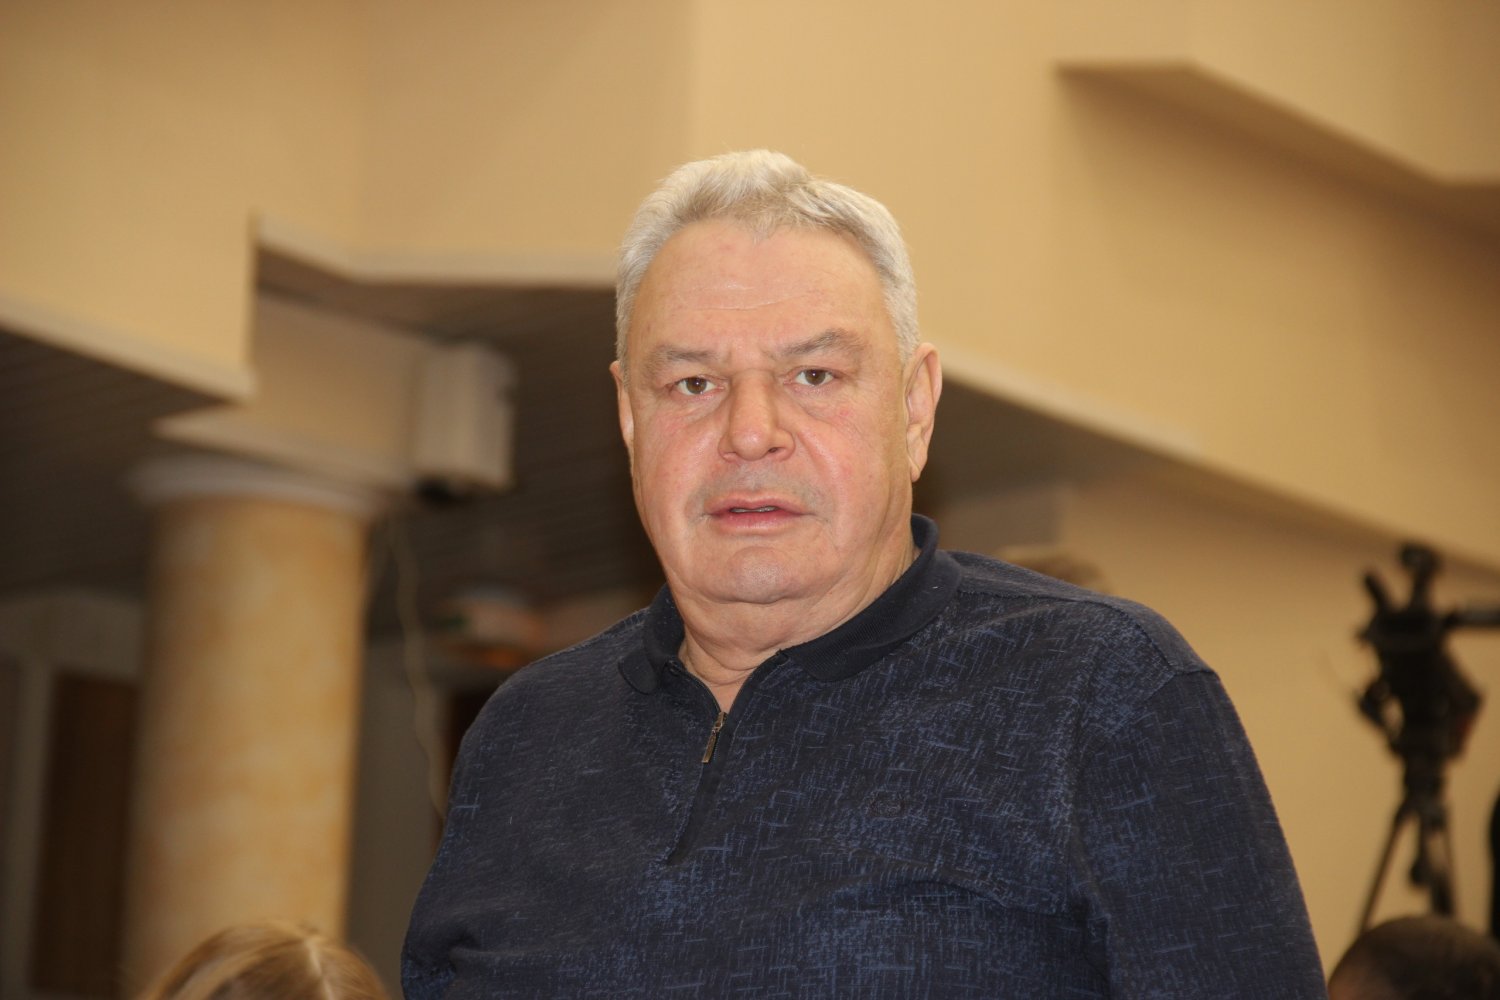 Олег Ляпин